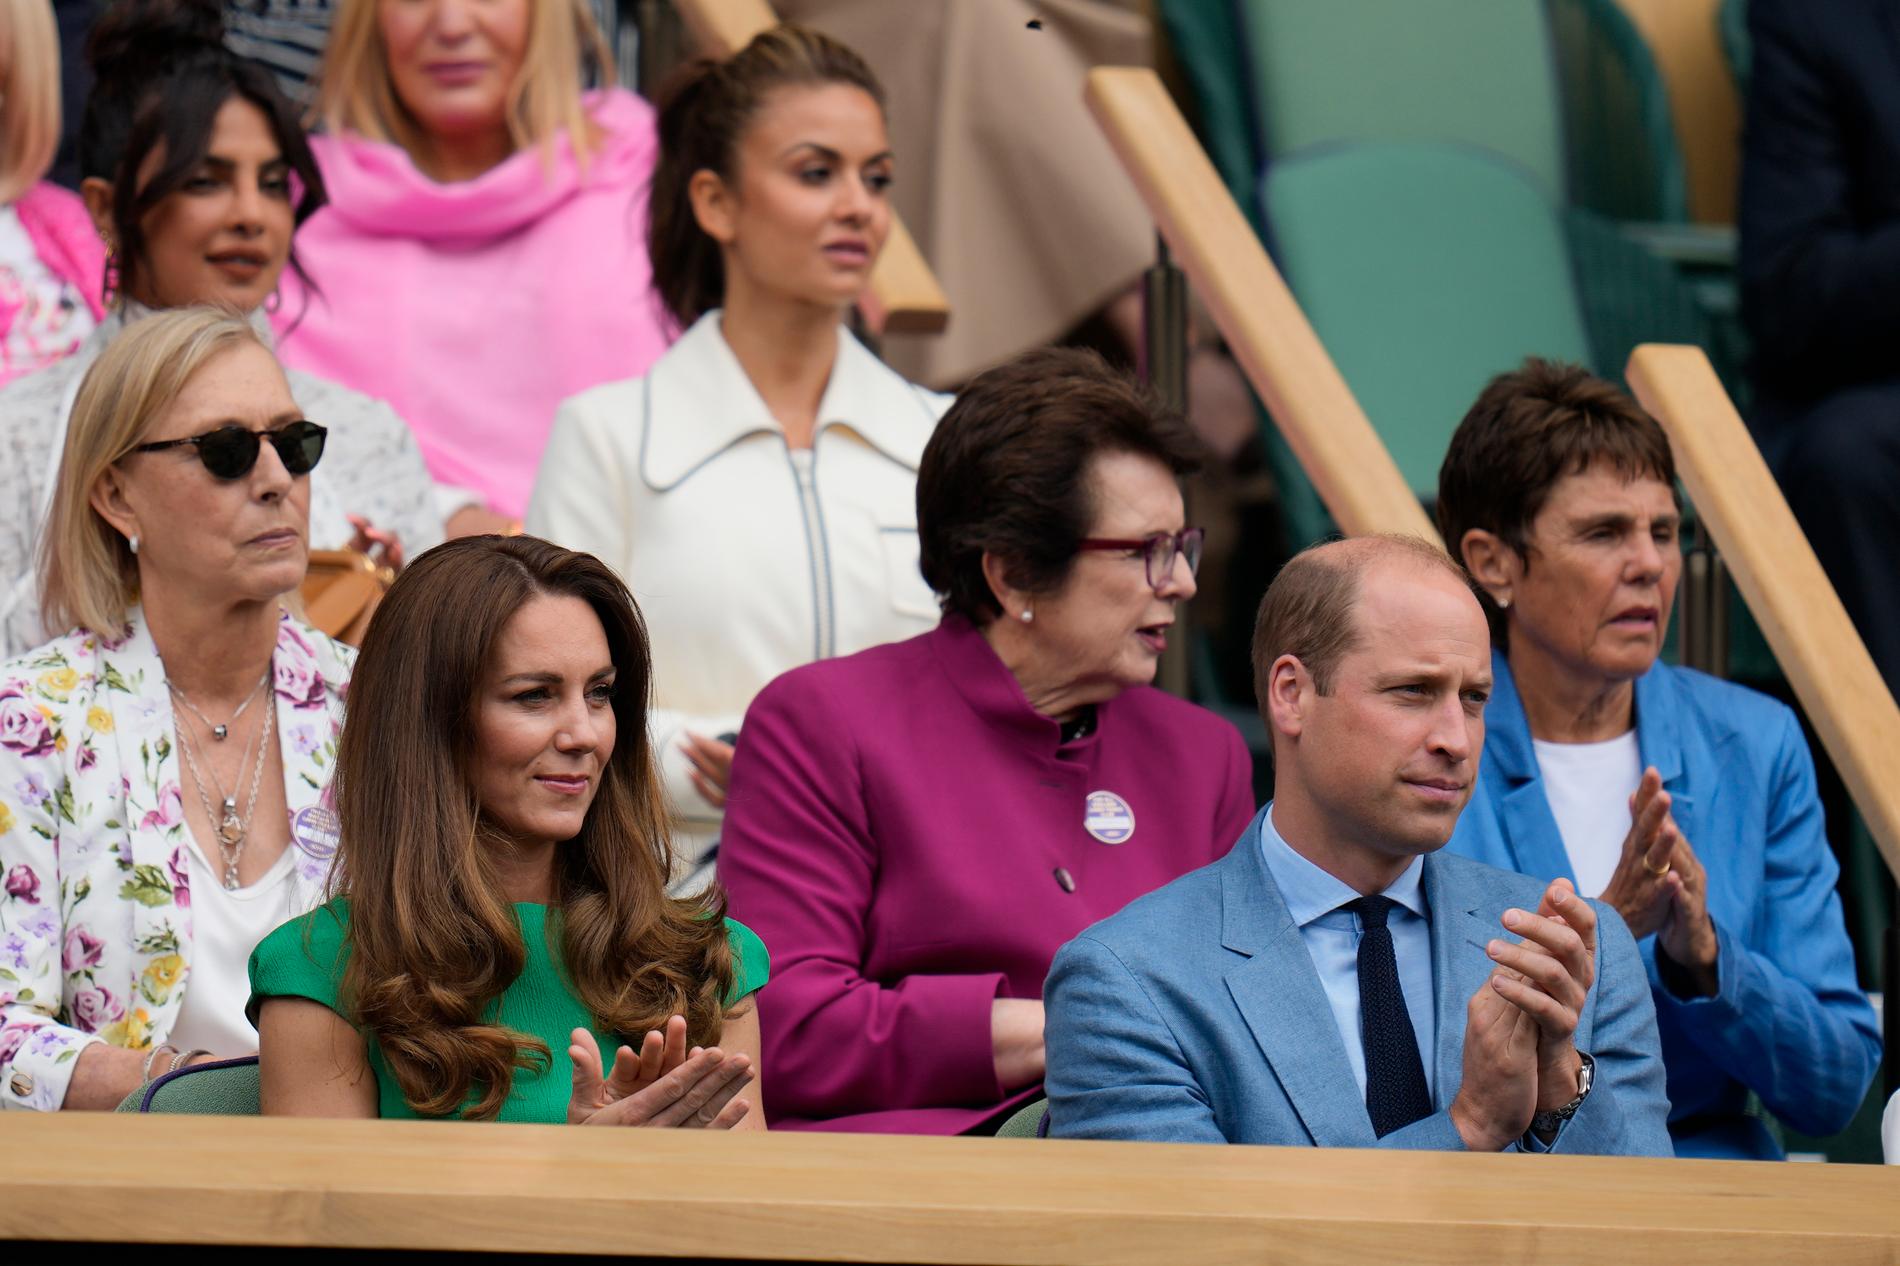 Hertiginnan av Cambridge Kate Middleton tillsammans med Prins William under Wimbledon.